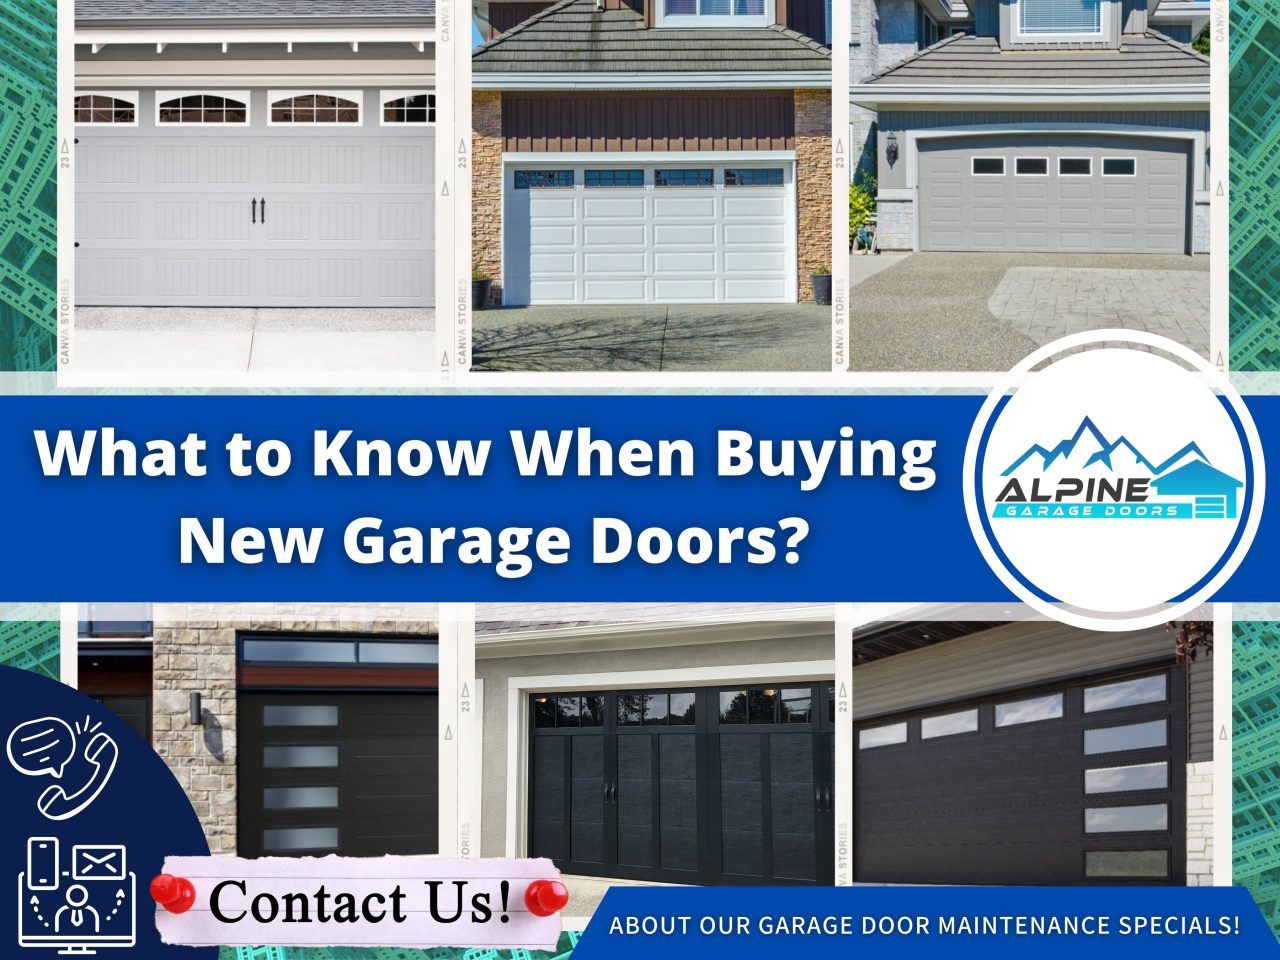 https://alpinegaragedoorsne.com/wp-content/uploads/2021/11/What_to_Know_When_Buying_New_Garage_Doors-1280x960.jpg